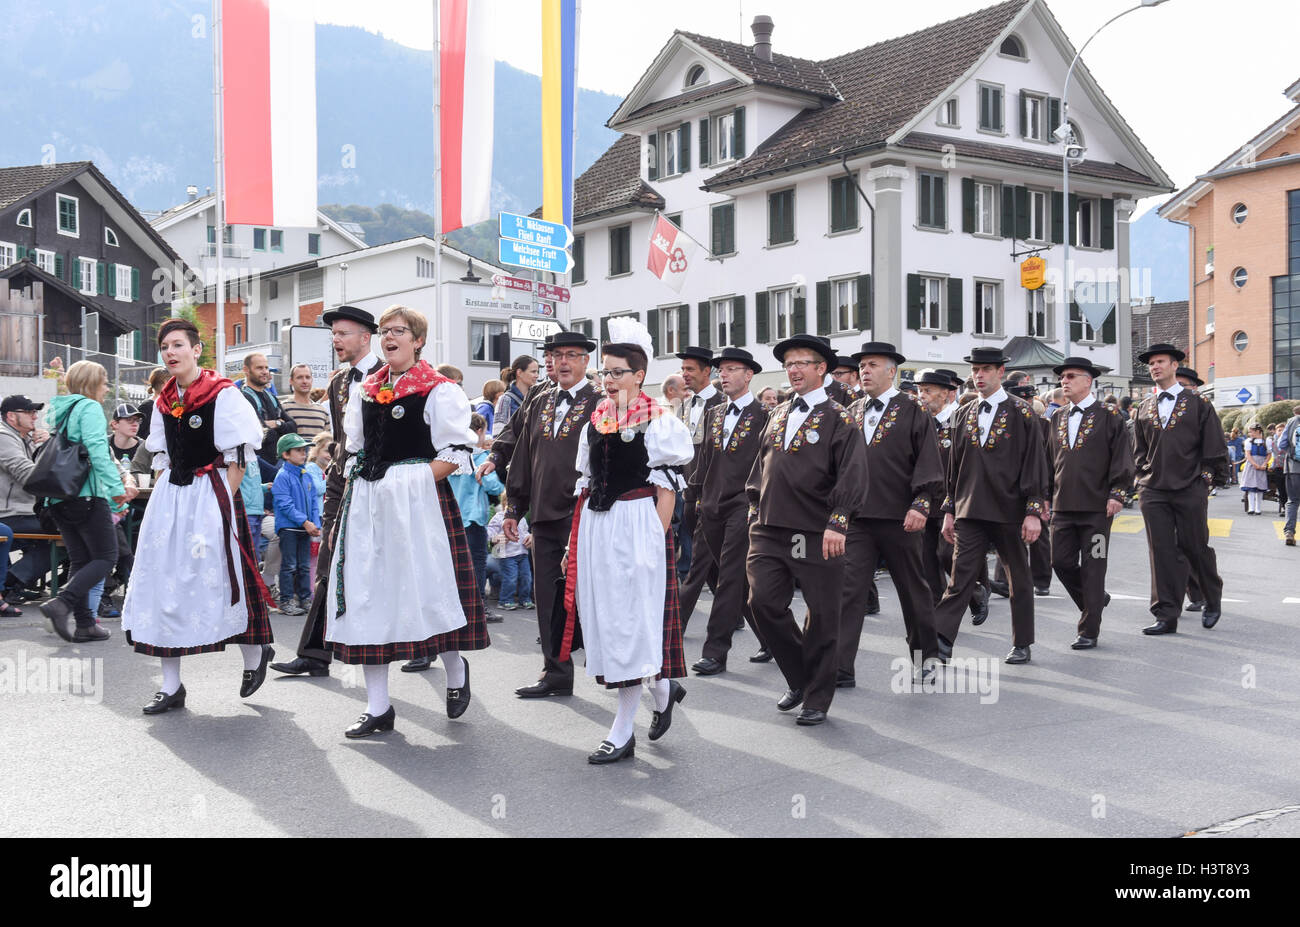 Kerns, Schweiz - 1. Oktober 2016: die Menschen tragen traditionelle  Kleidung und singen in einer Parade in Kerns in den Schweizer Alpen  Stockfotografie - Alamy